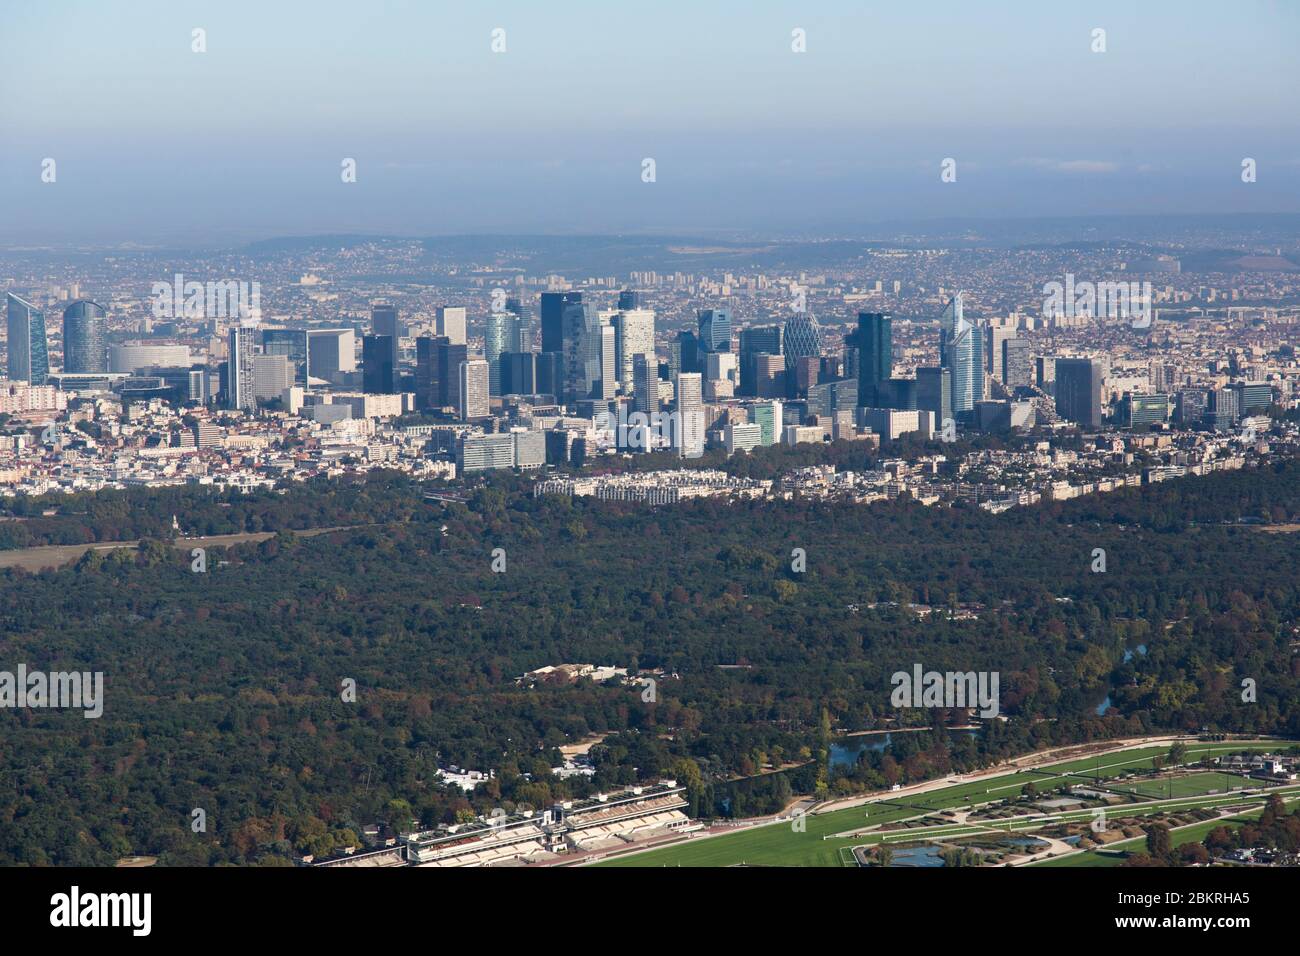 France, Paris, 16th arrondissement, Bois de Boulogne and La Defense (aerial view) Stock Photo